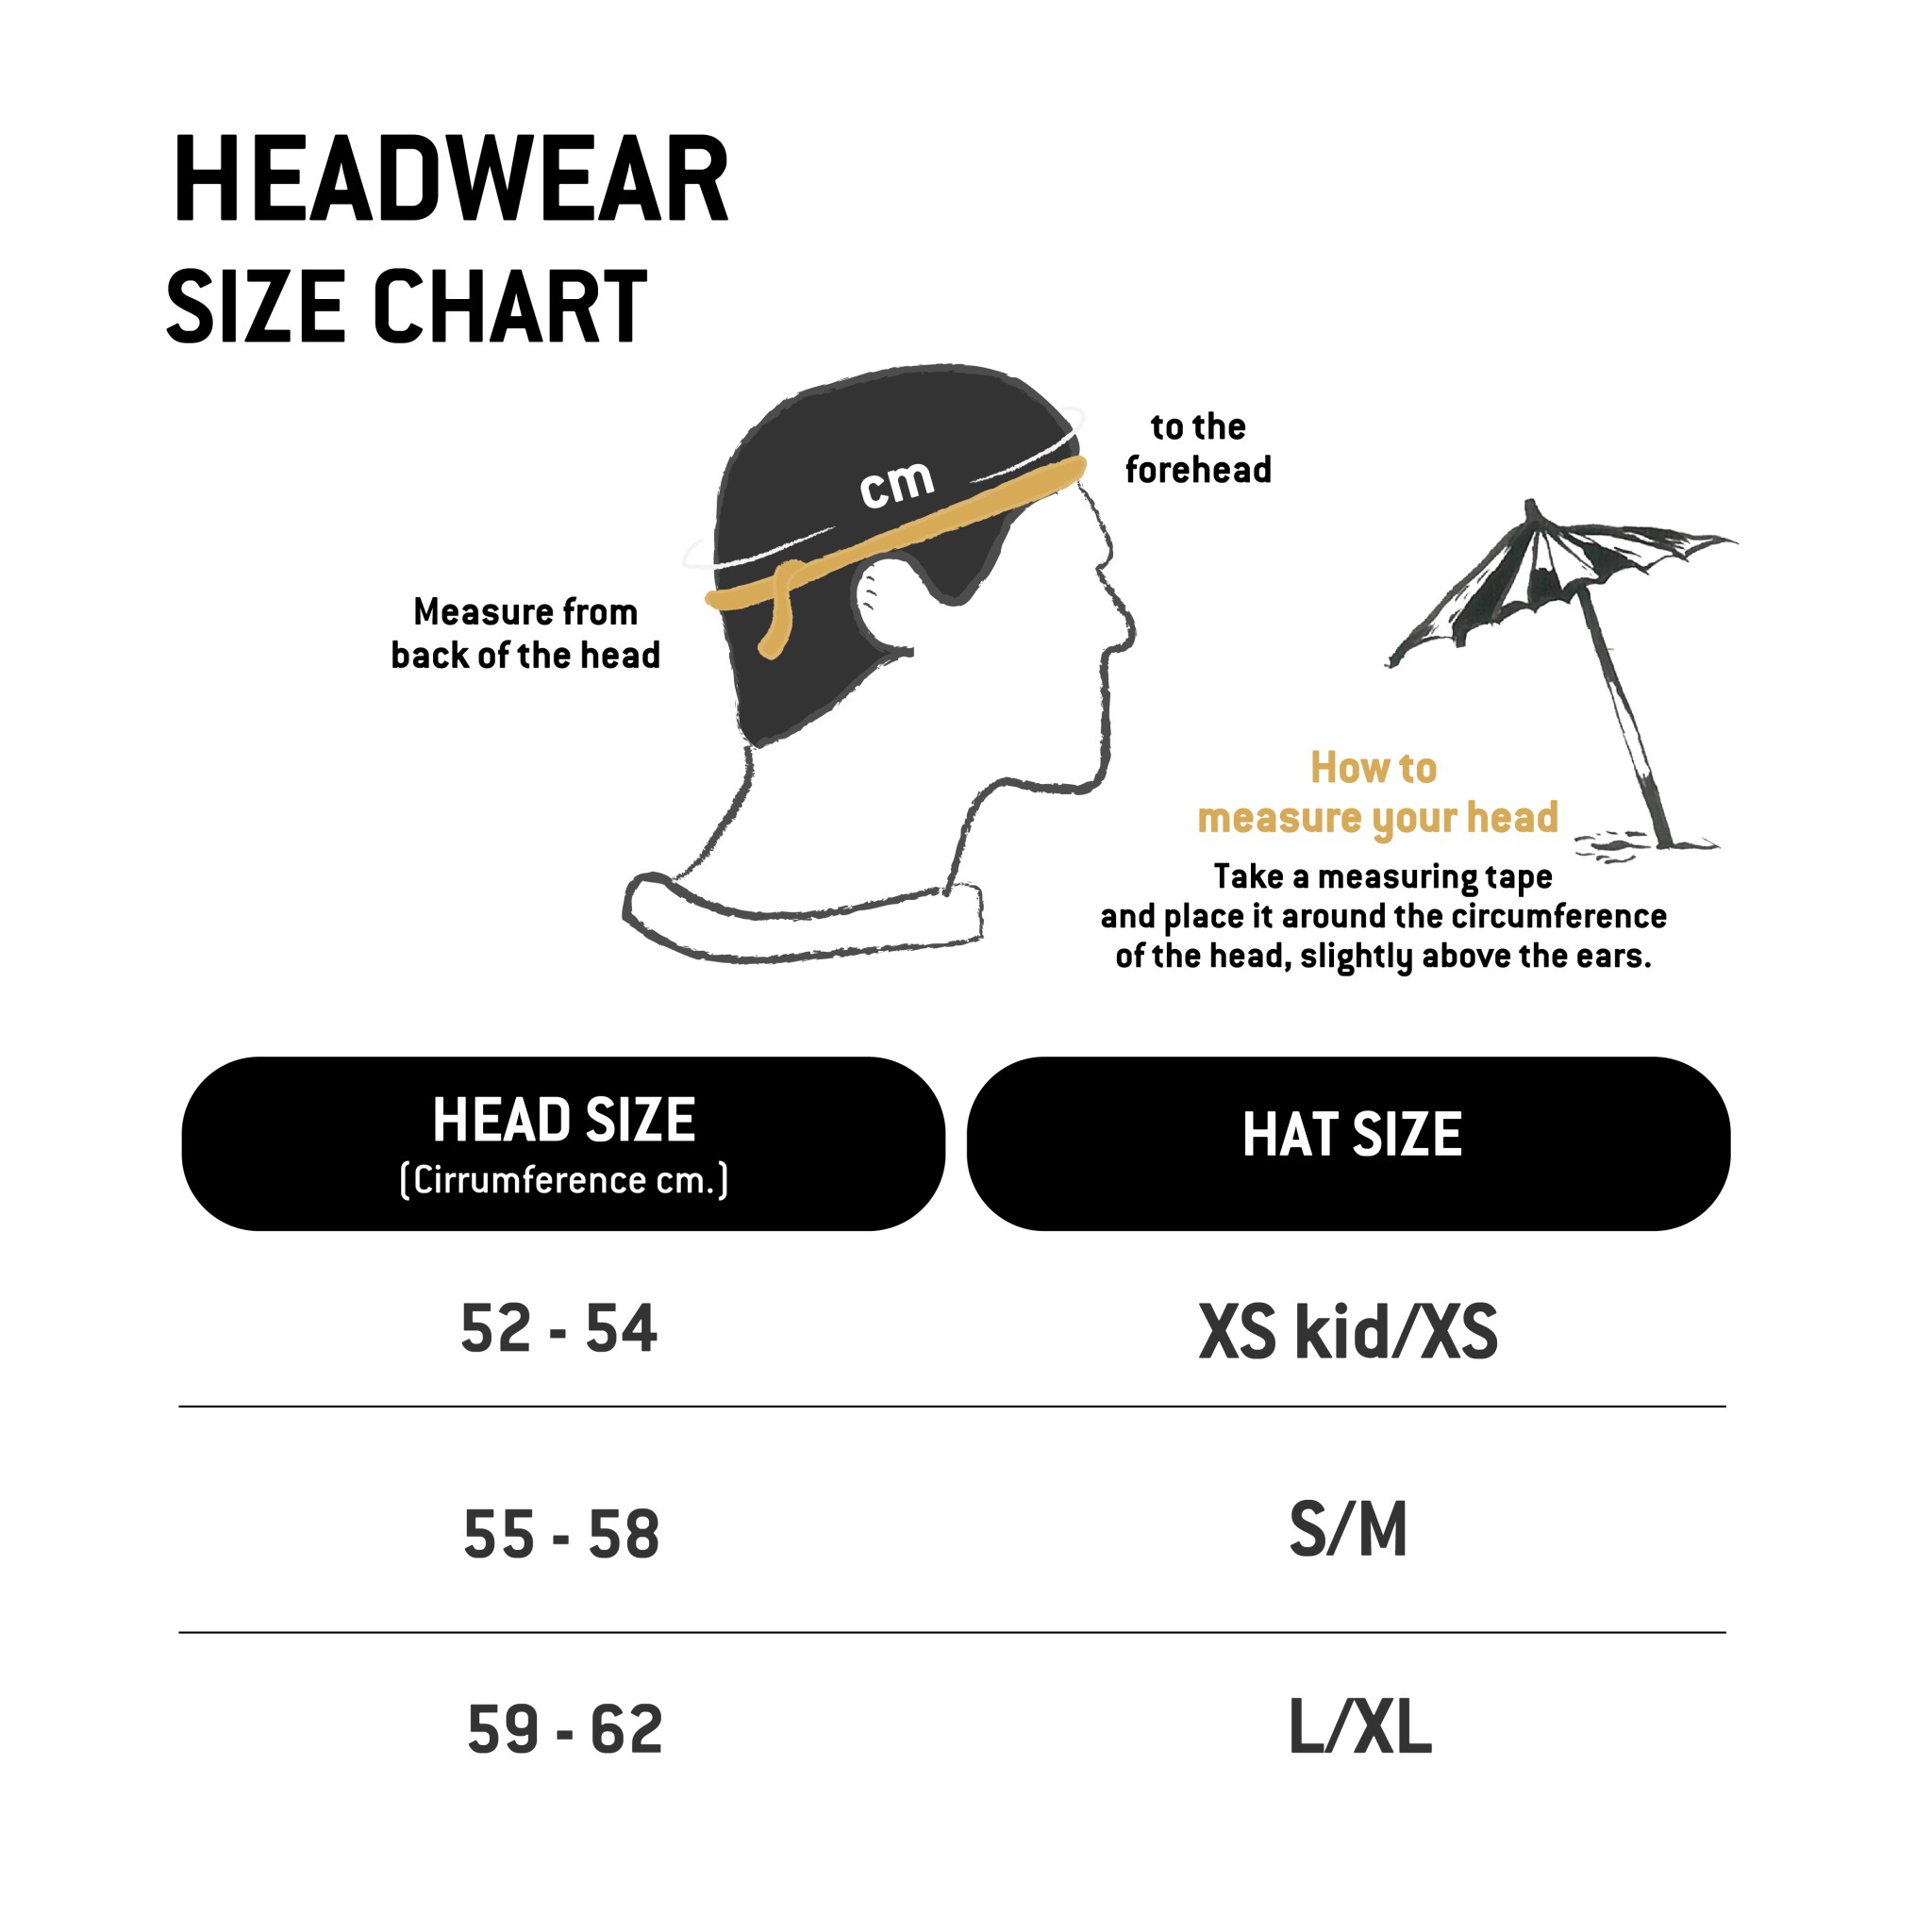 headwear-size-chart